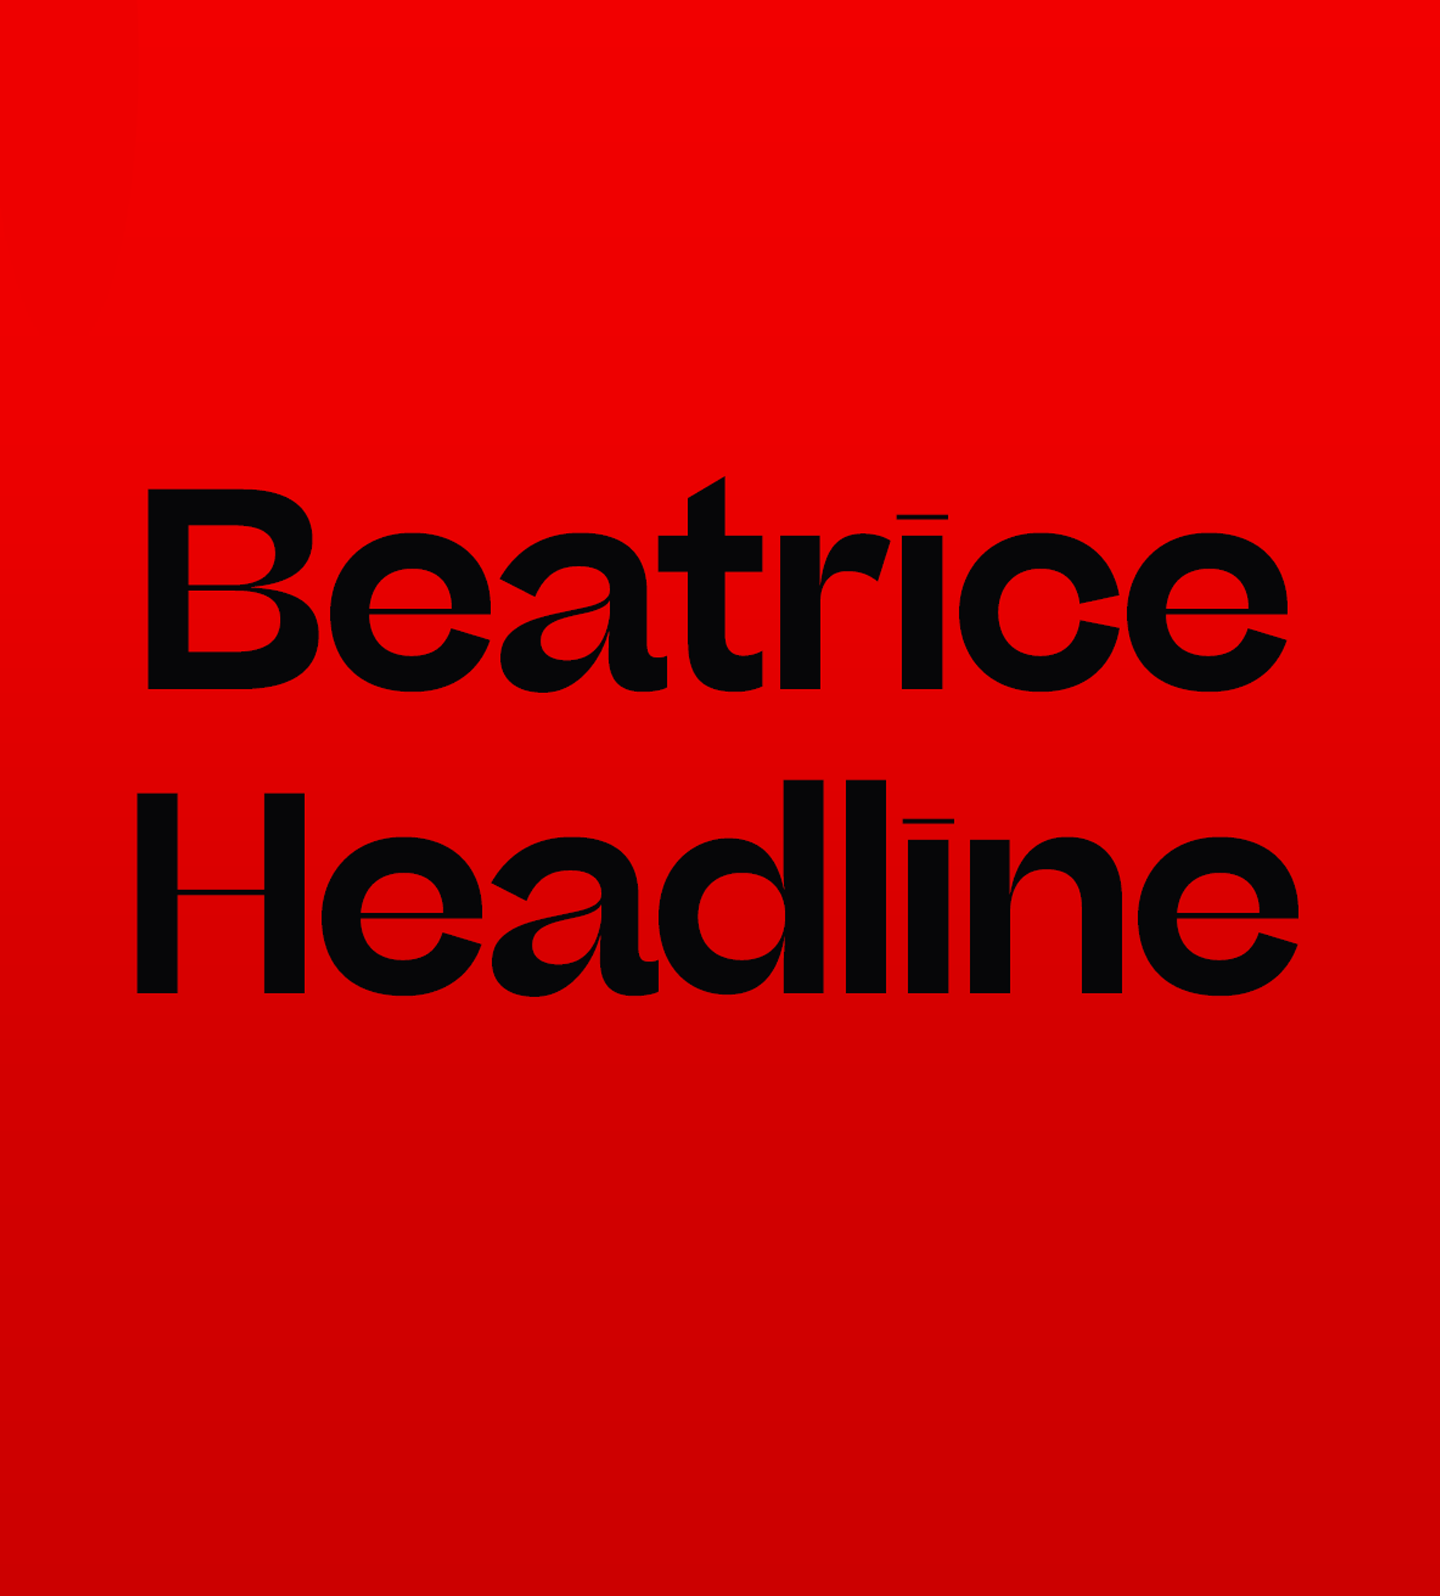 Пример шрифта Beatrice Headline Extra bold Italic